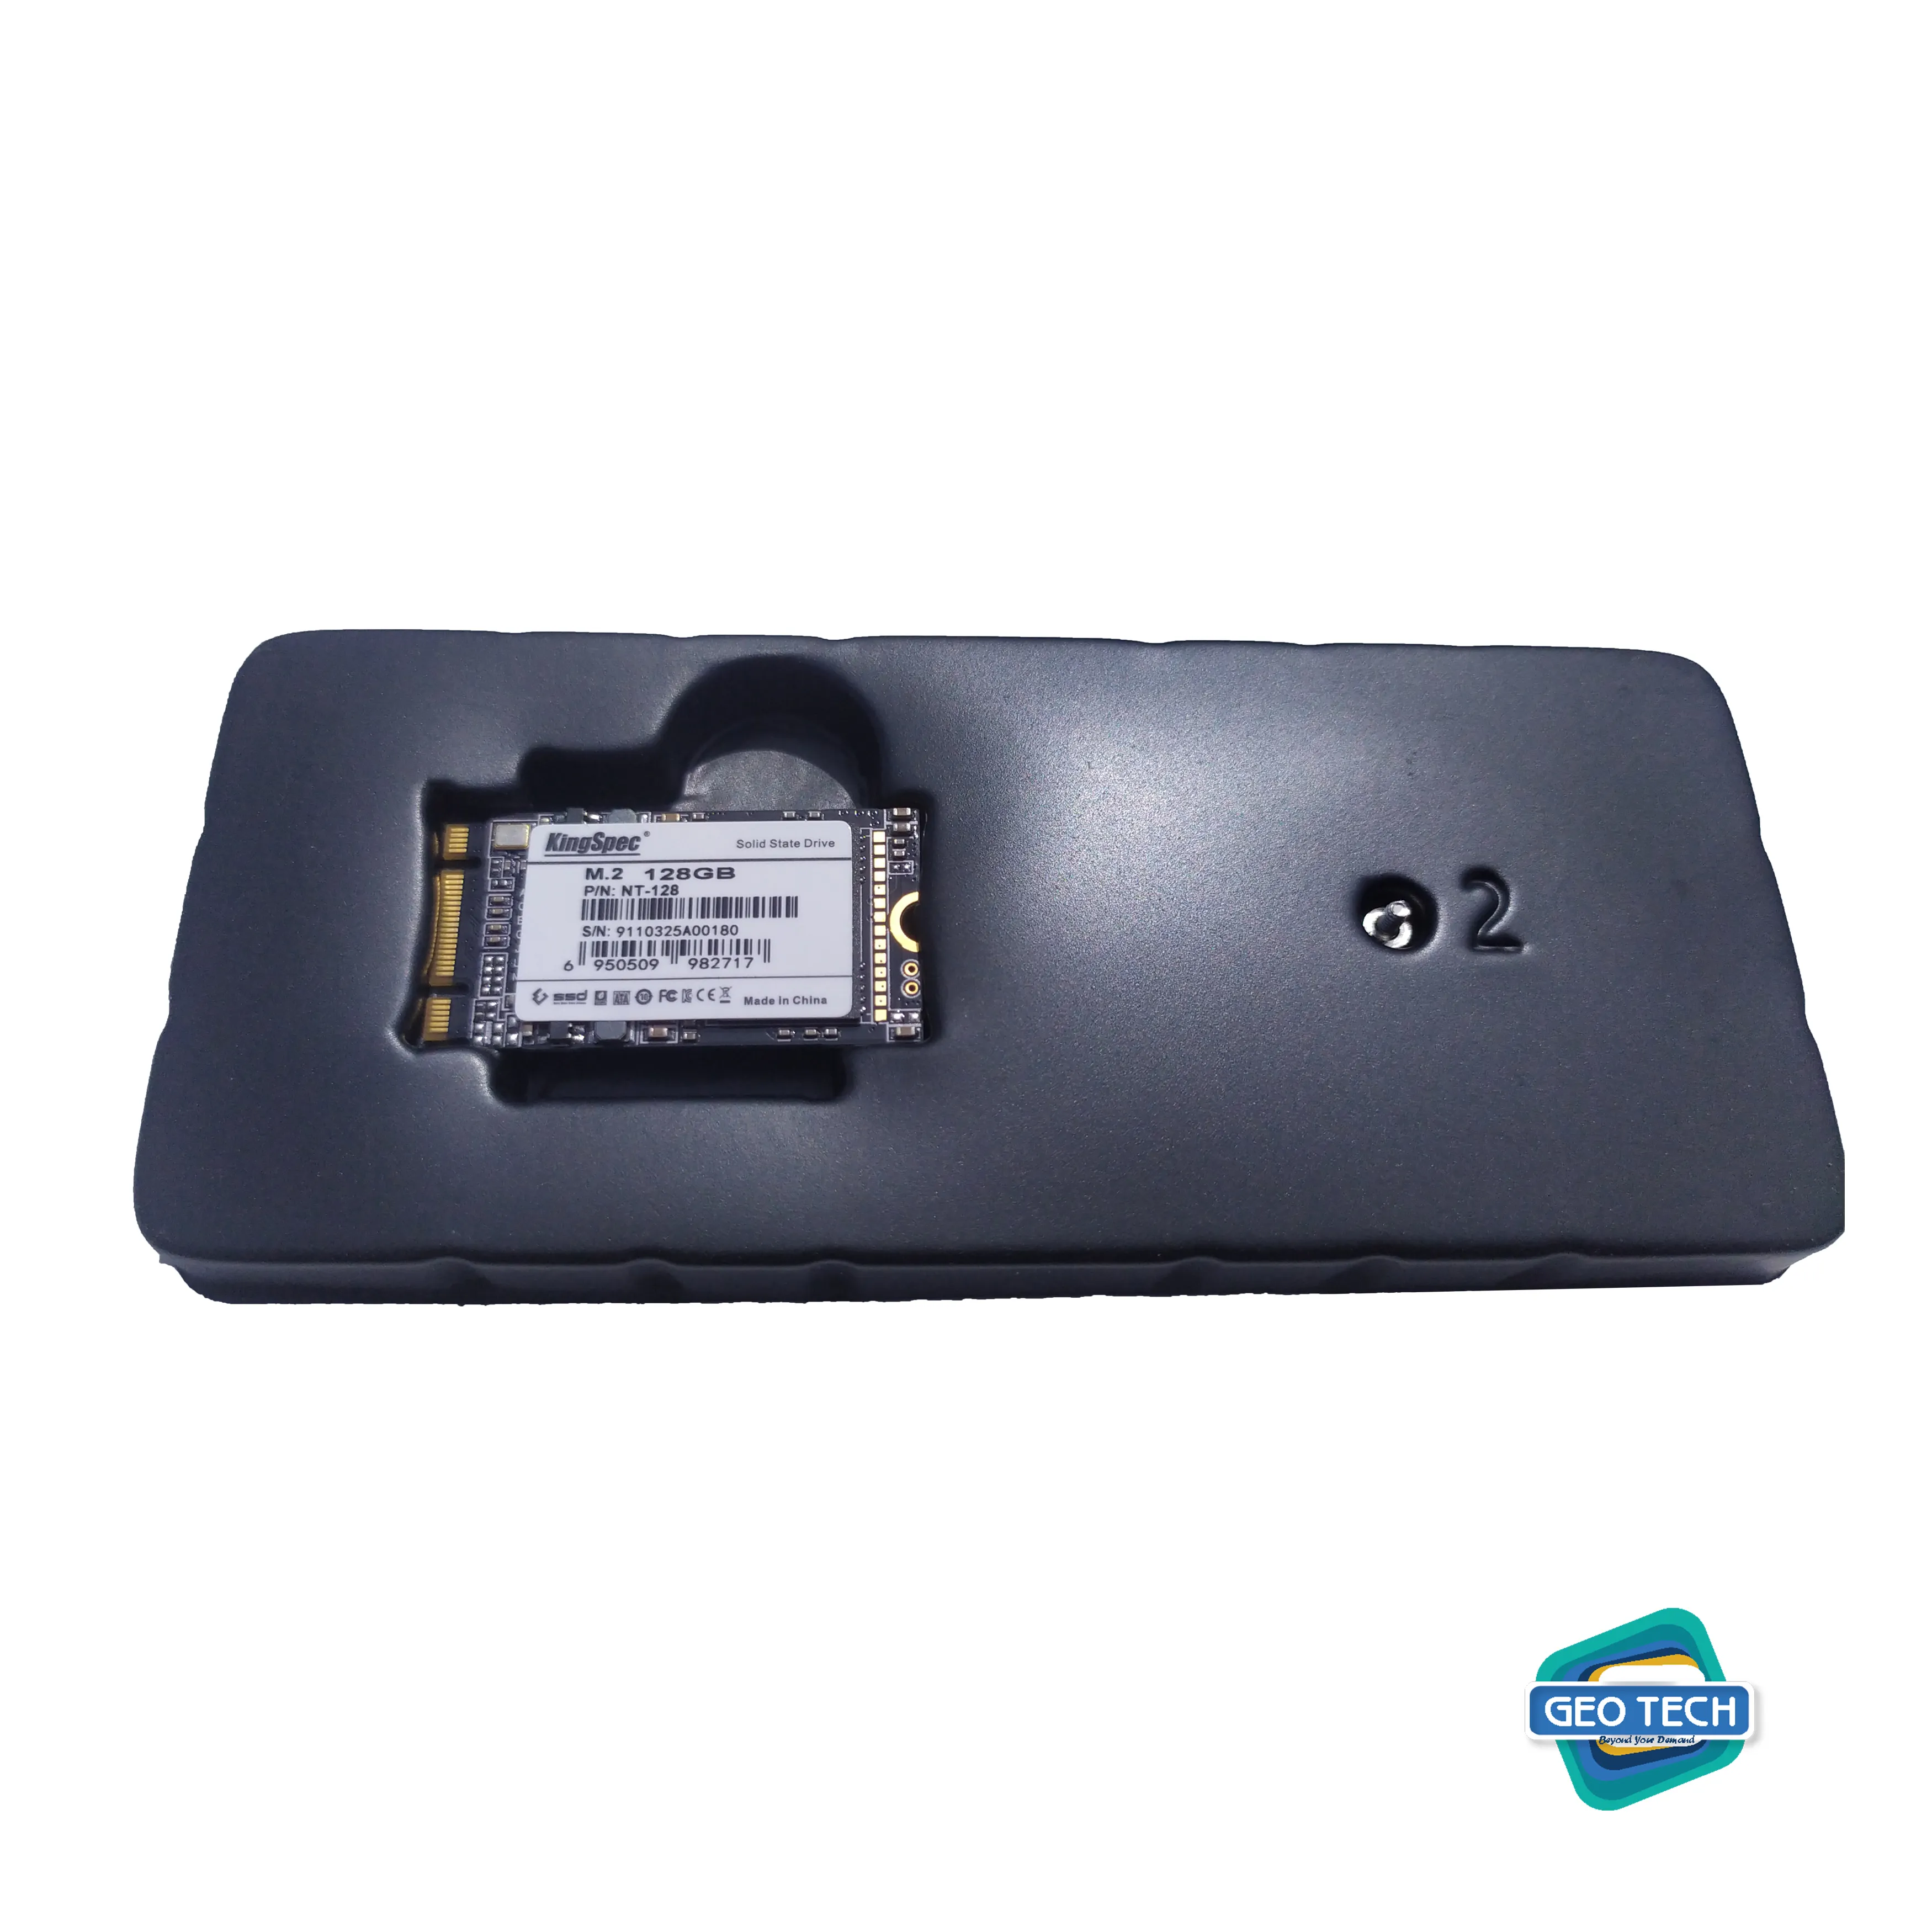 Laptop/Desktop SSD KingSpec M.2 2242 128GB Internal Solid State Drive SATA 6Gb/s